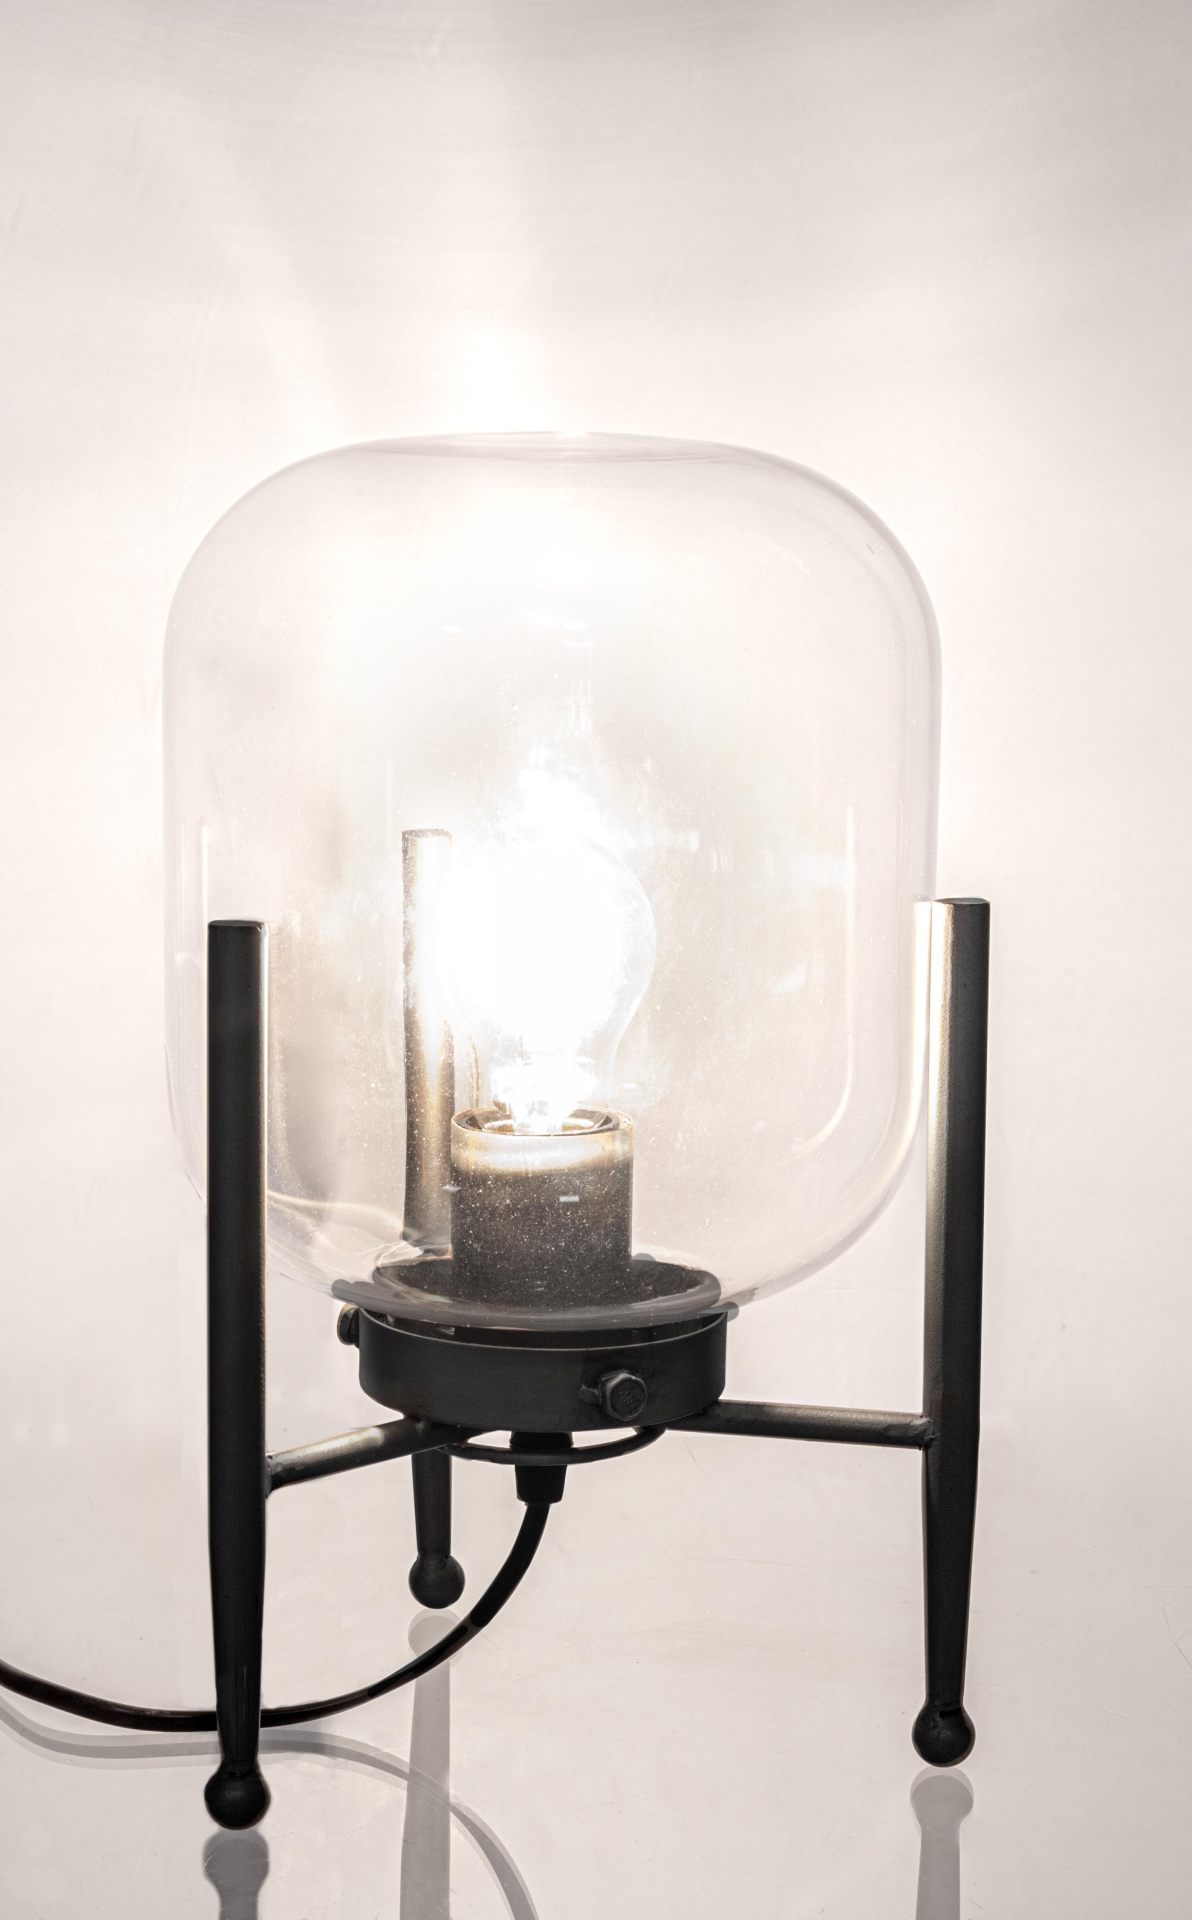 Die Tischleuchte Queer überzeugt mit ihrem klassischen Design. Gefertigt wurde sie aus Metall, welches einen schwarzen Farbton besitzt. Der Lampenschirm ist aus Glas.  Die Lampe besitzt eine Höhe von 38 cm.